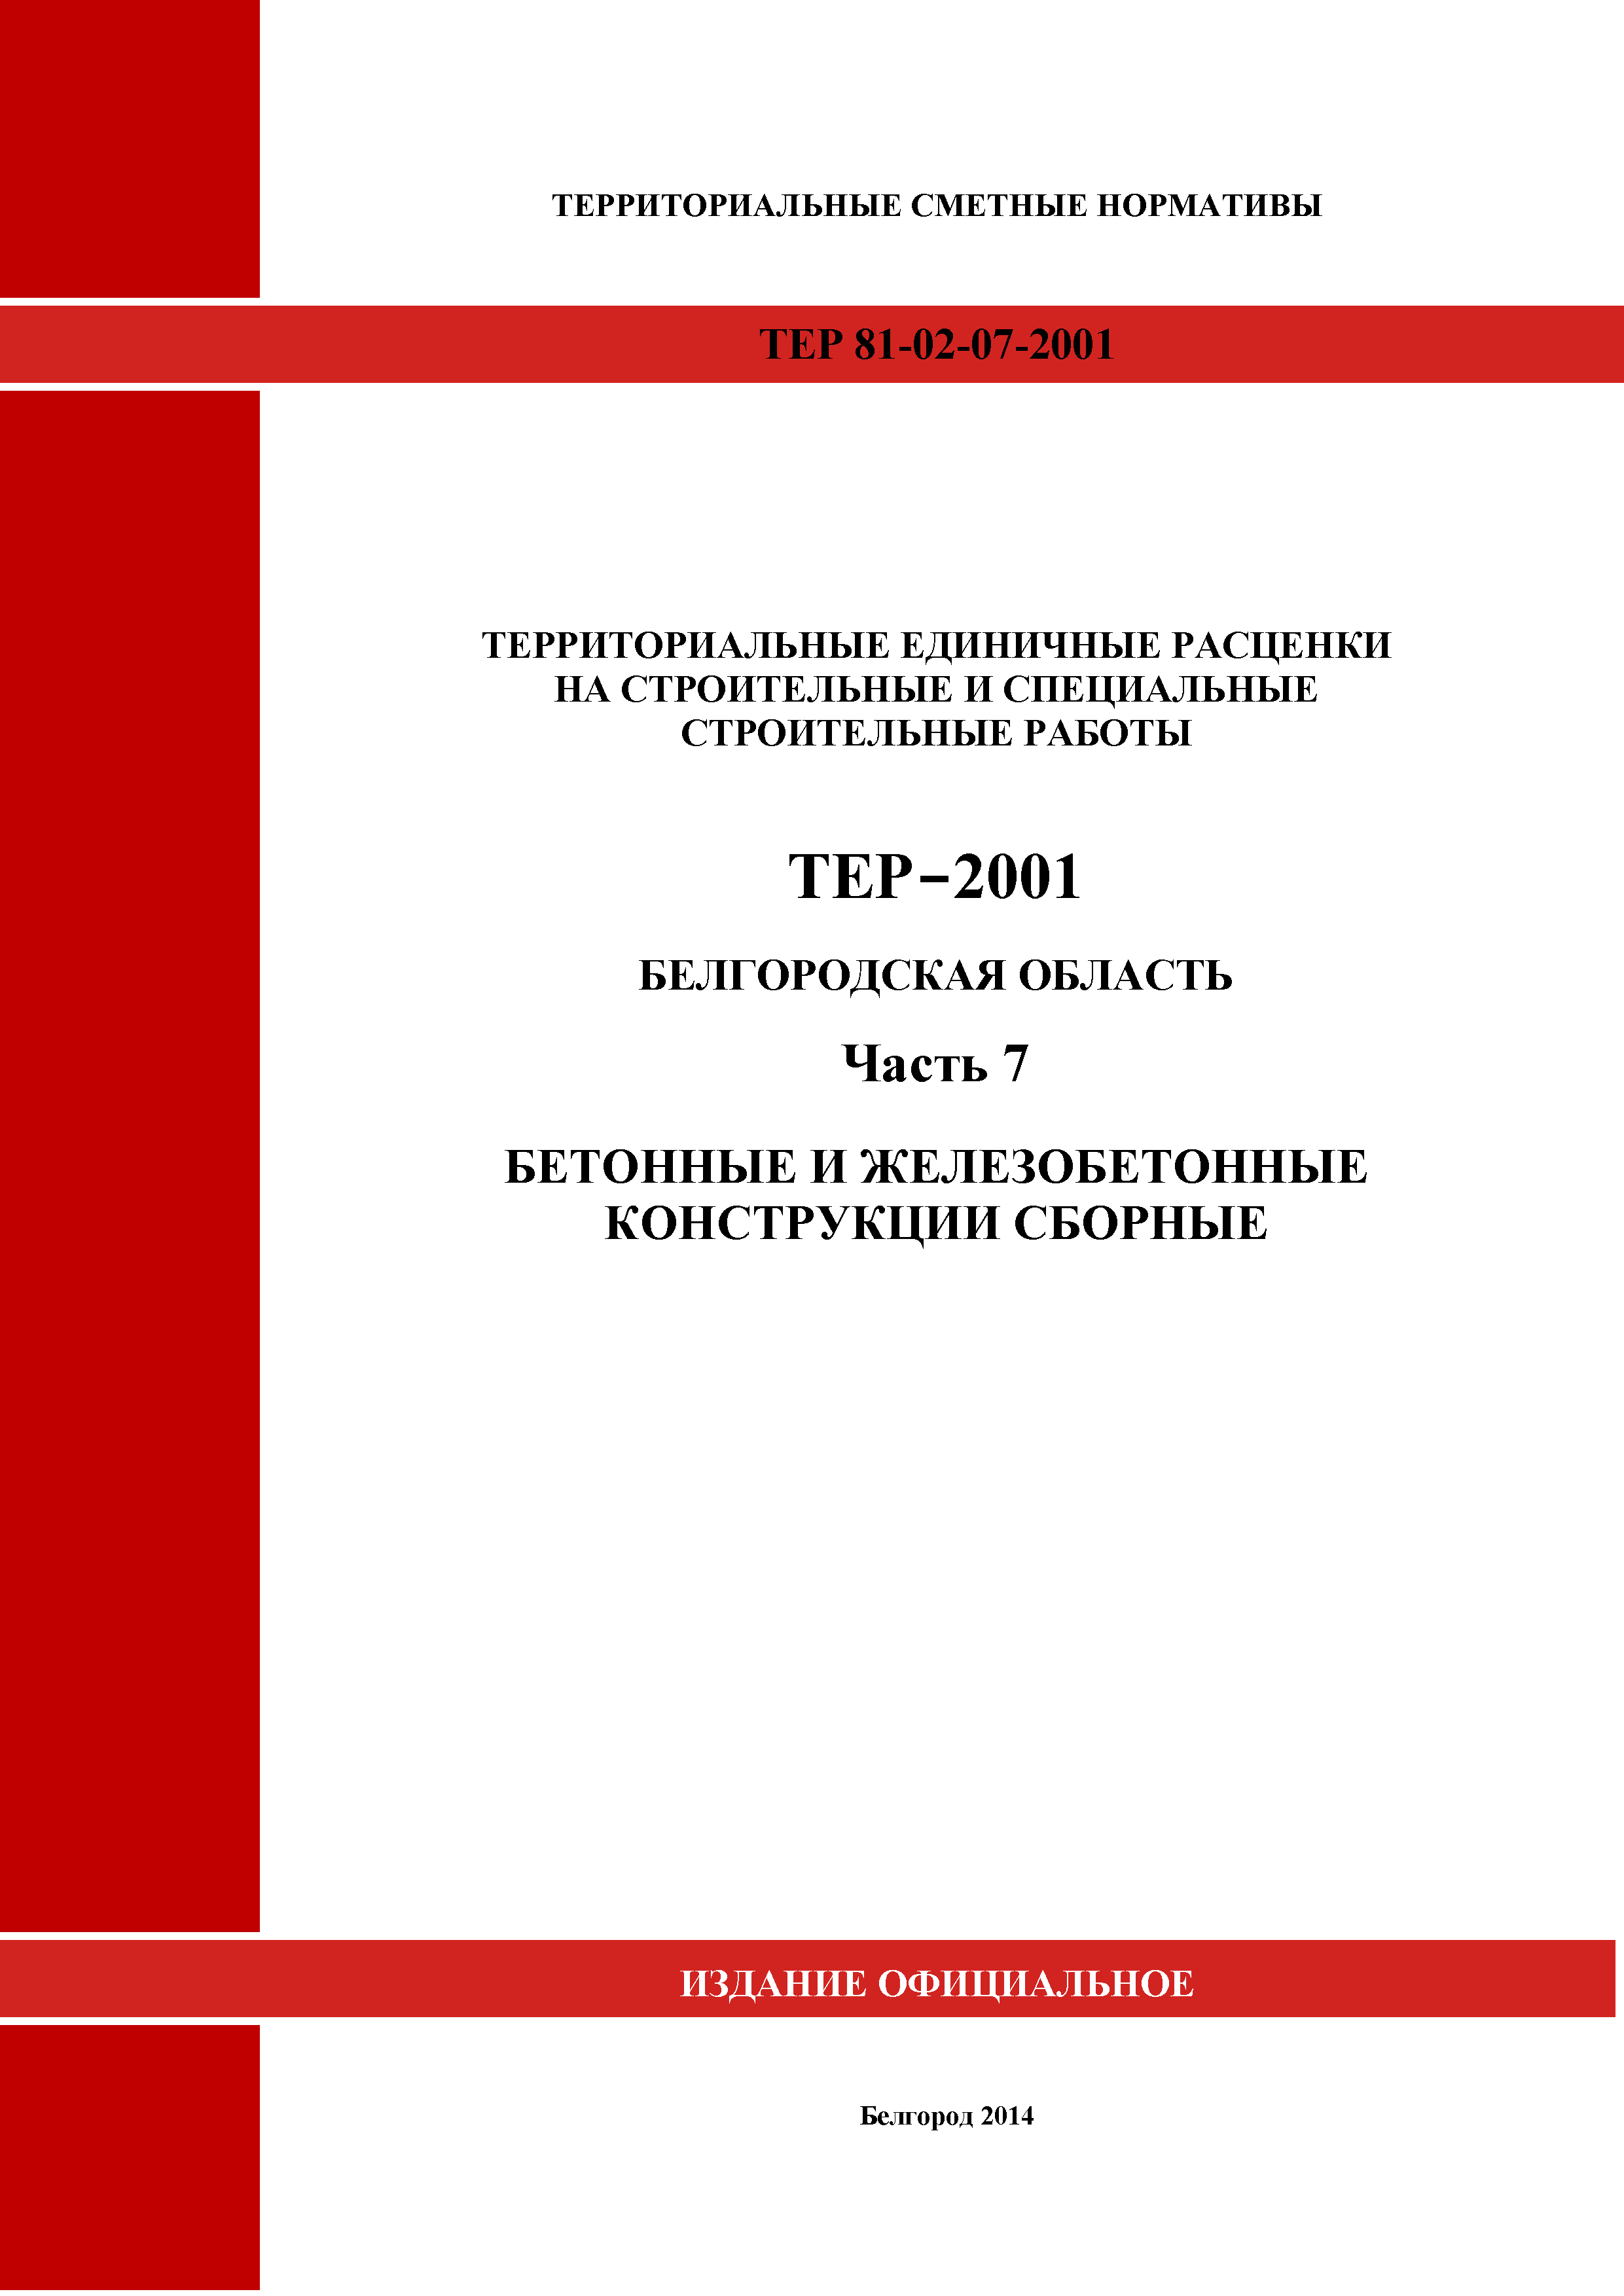 ТЕР Белгородская область 81-02-07-2001